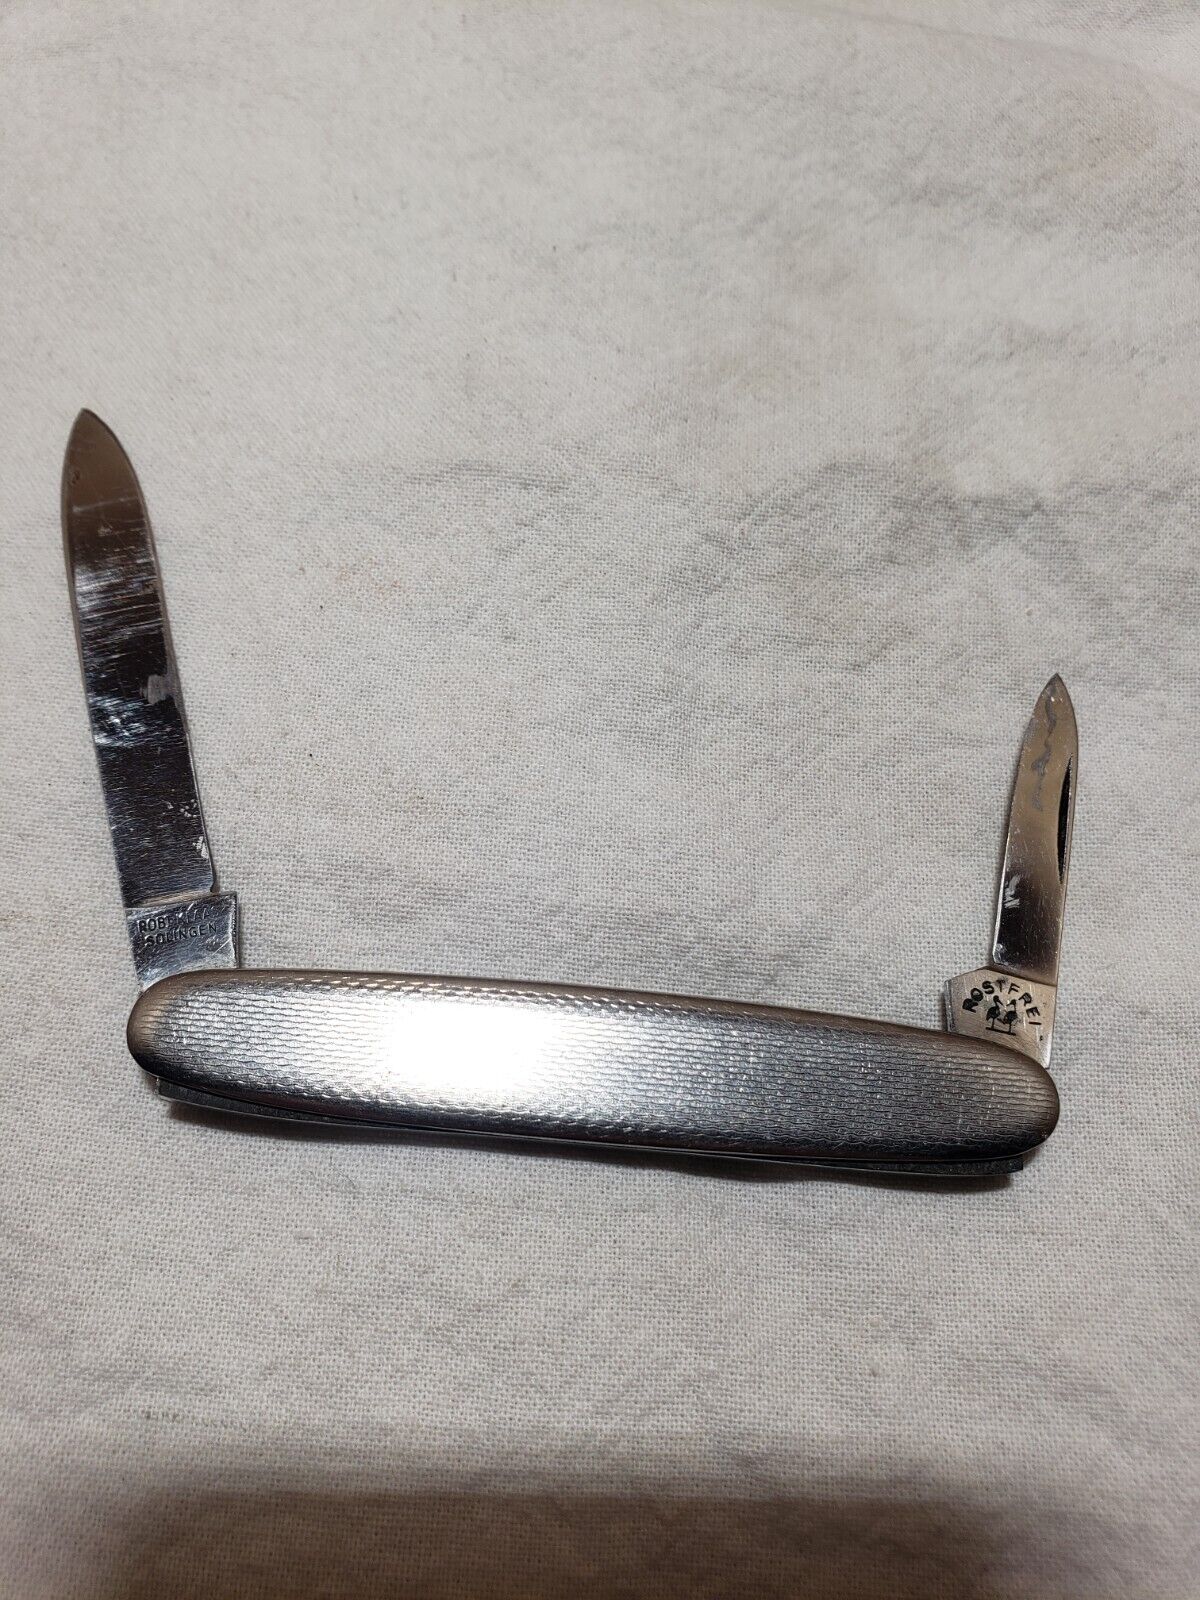 Vintage Robt Klass Rostfrei Solingen Knife